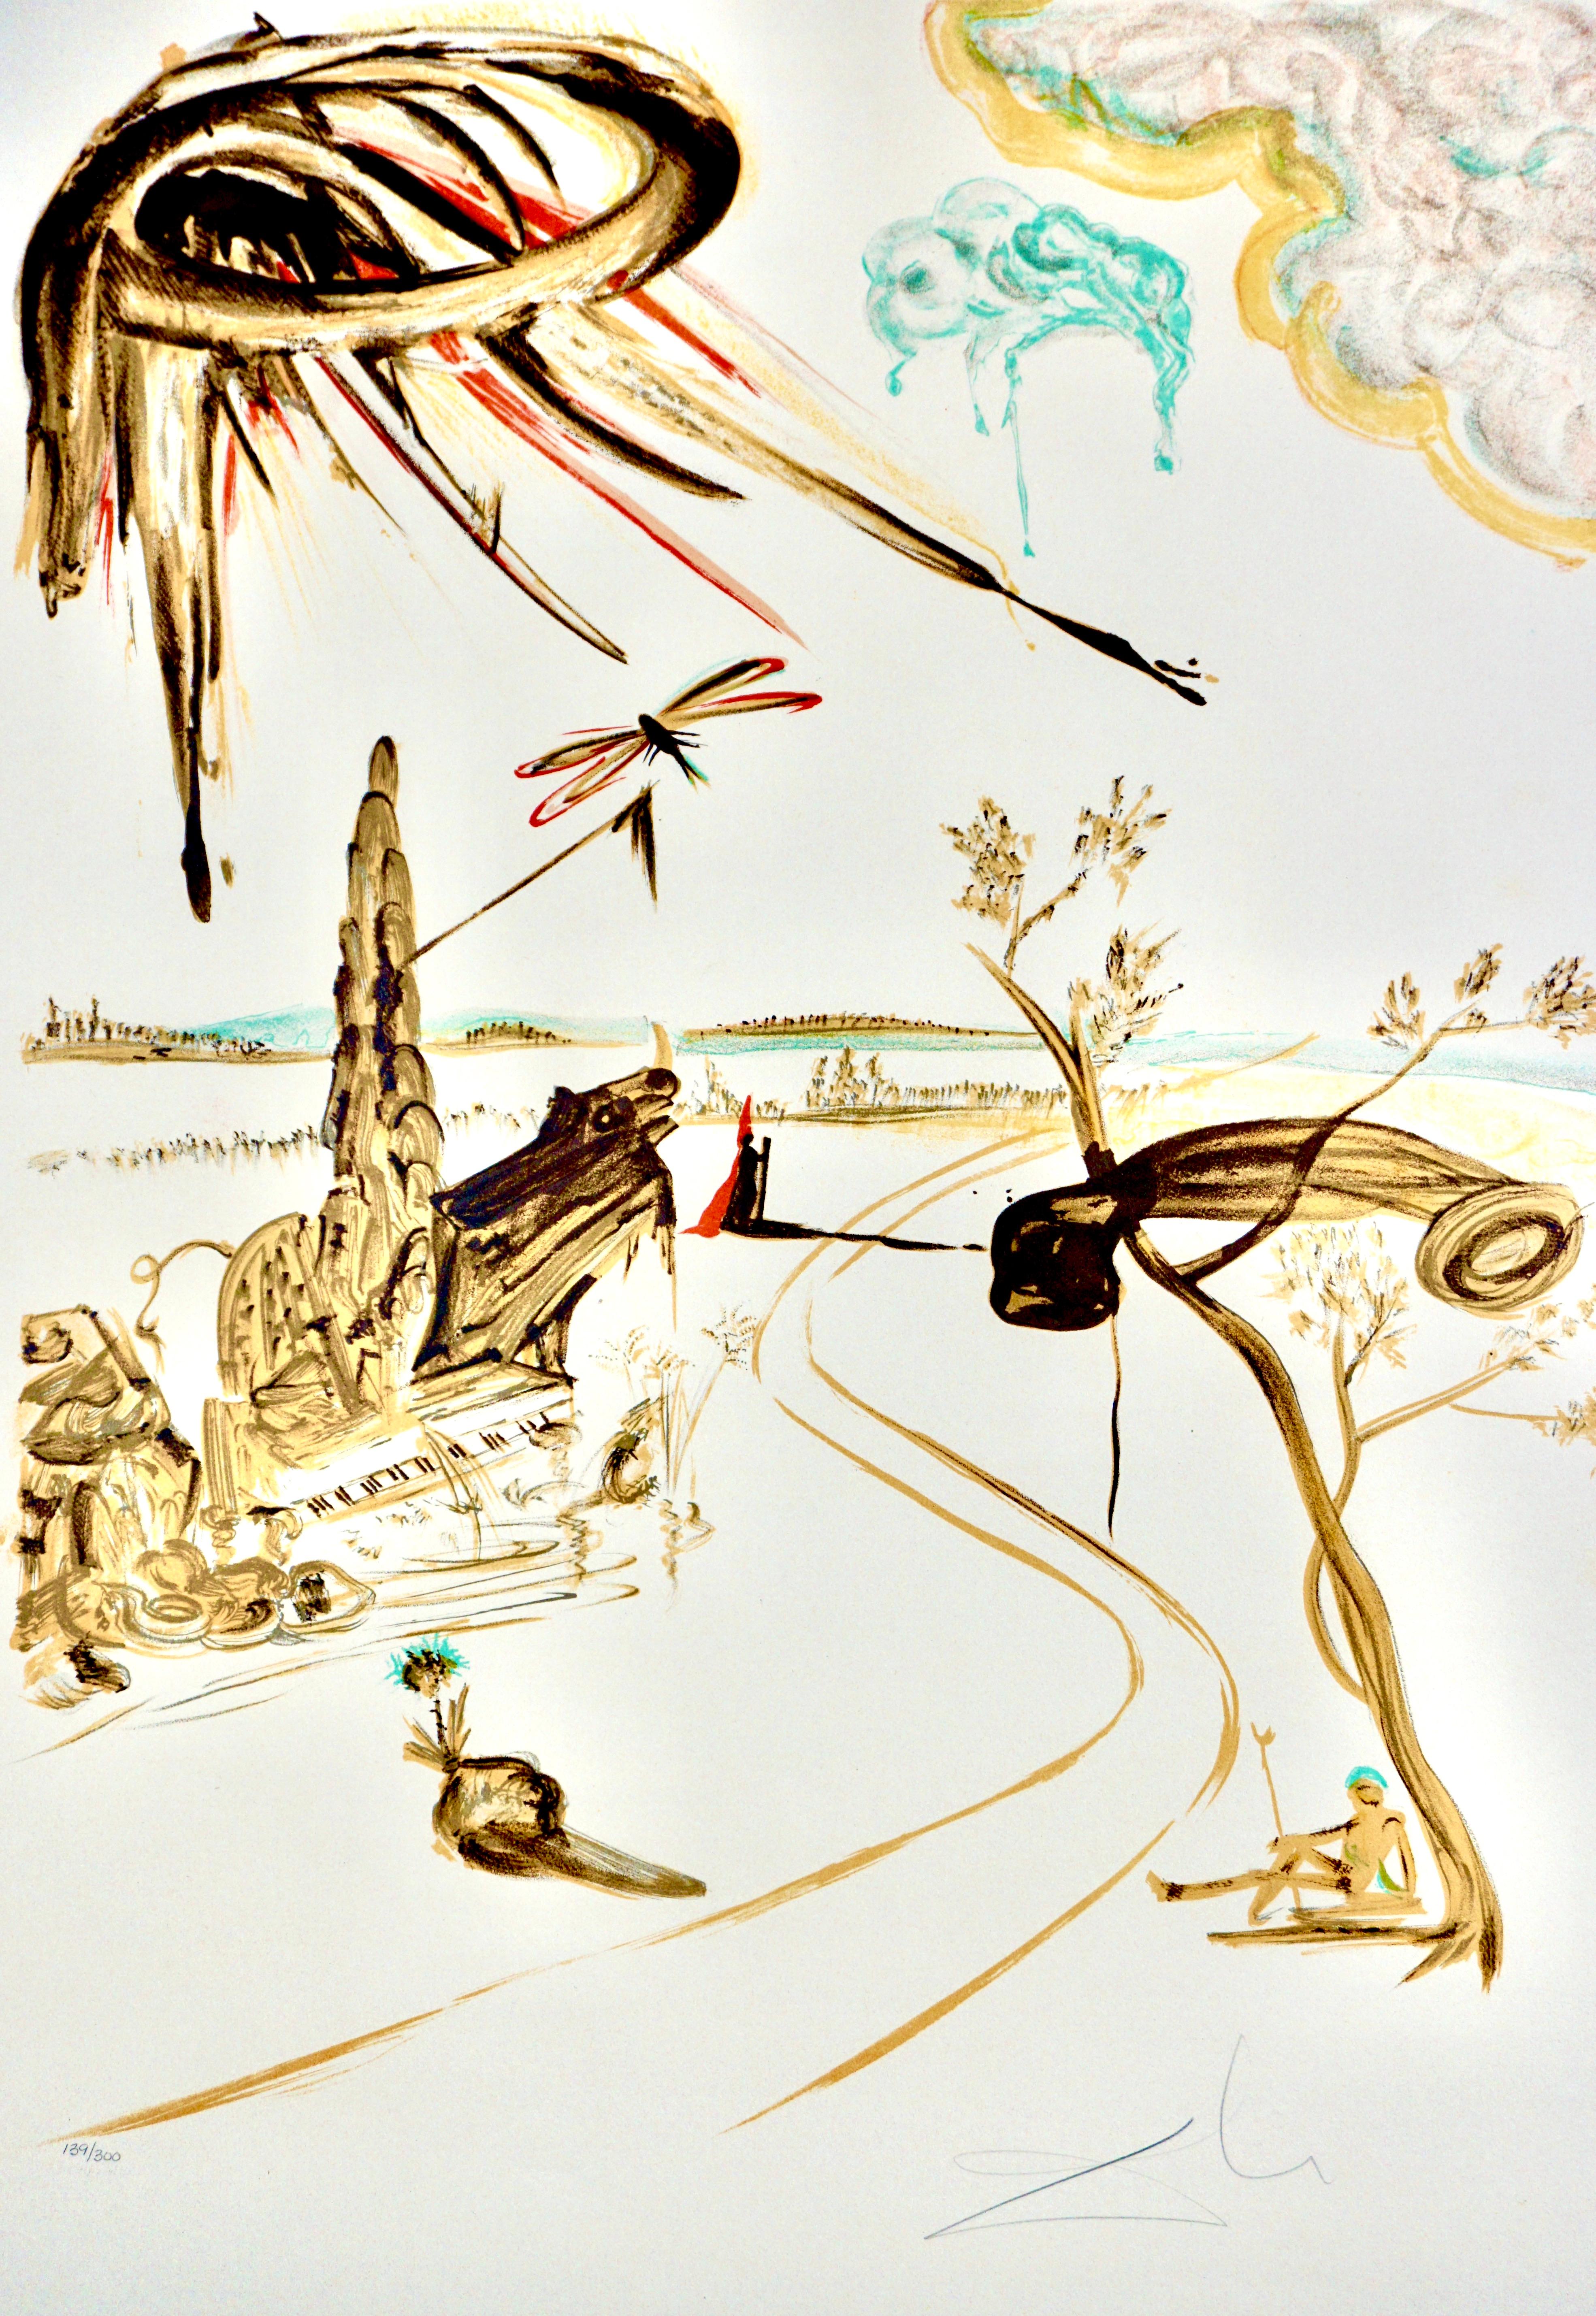 Fantastic Voyage  - Print by Salvador Dalí